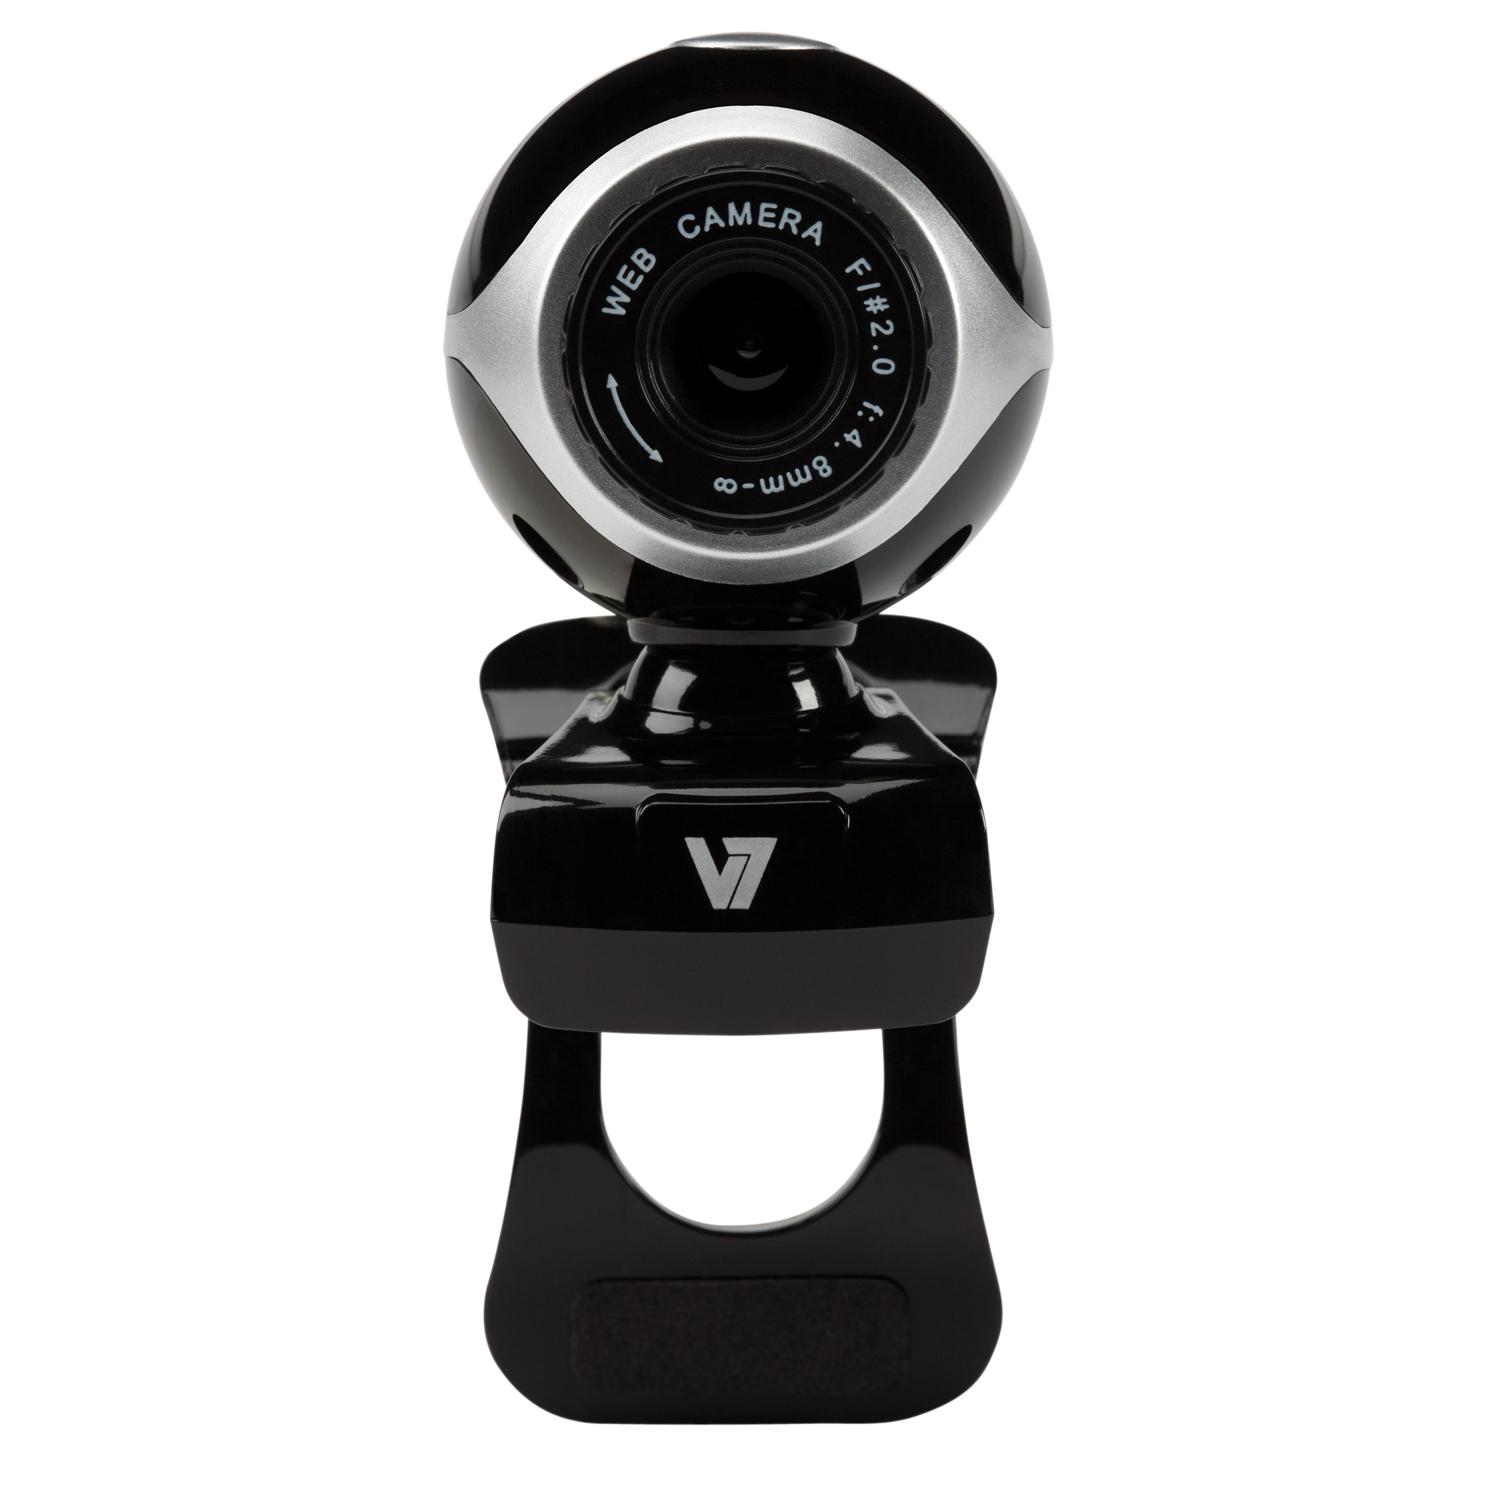 Foto V7 vantage webcam 300, 640 x 480 pixeles, 30 fps, vga, negro, p foto 172922